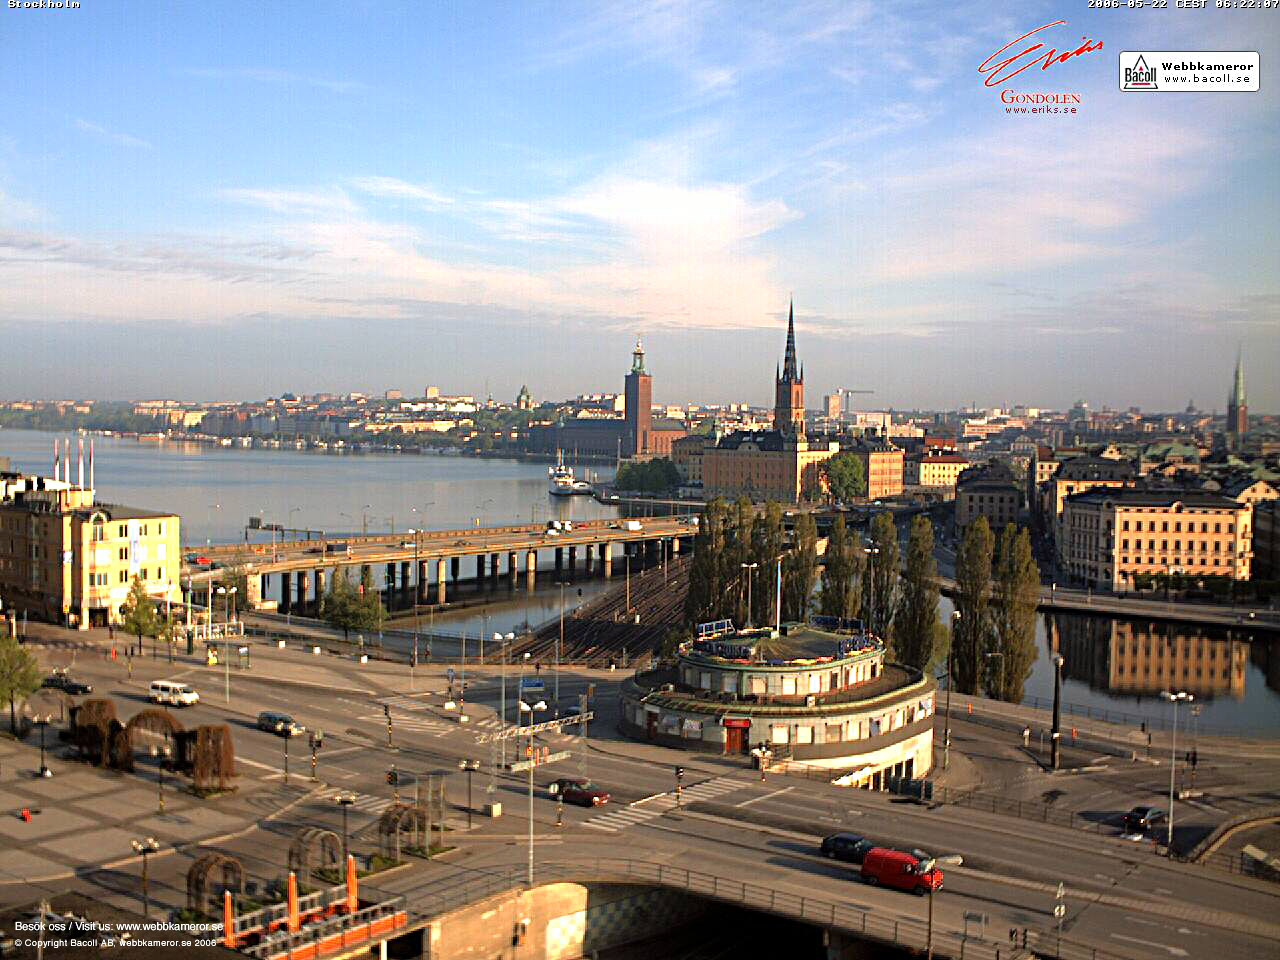 Webkamera, Stockholm, webcam, väder, weather